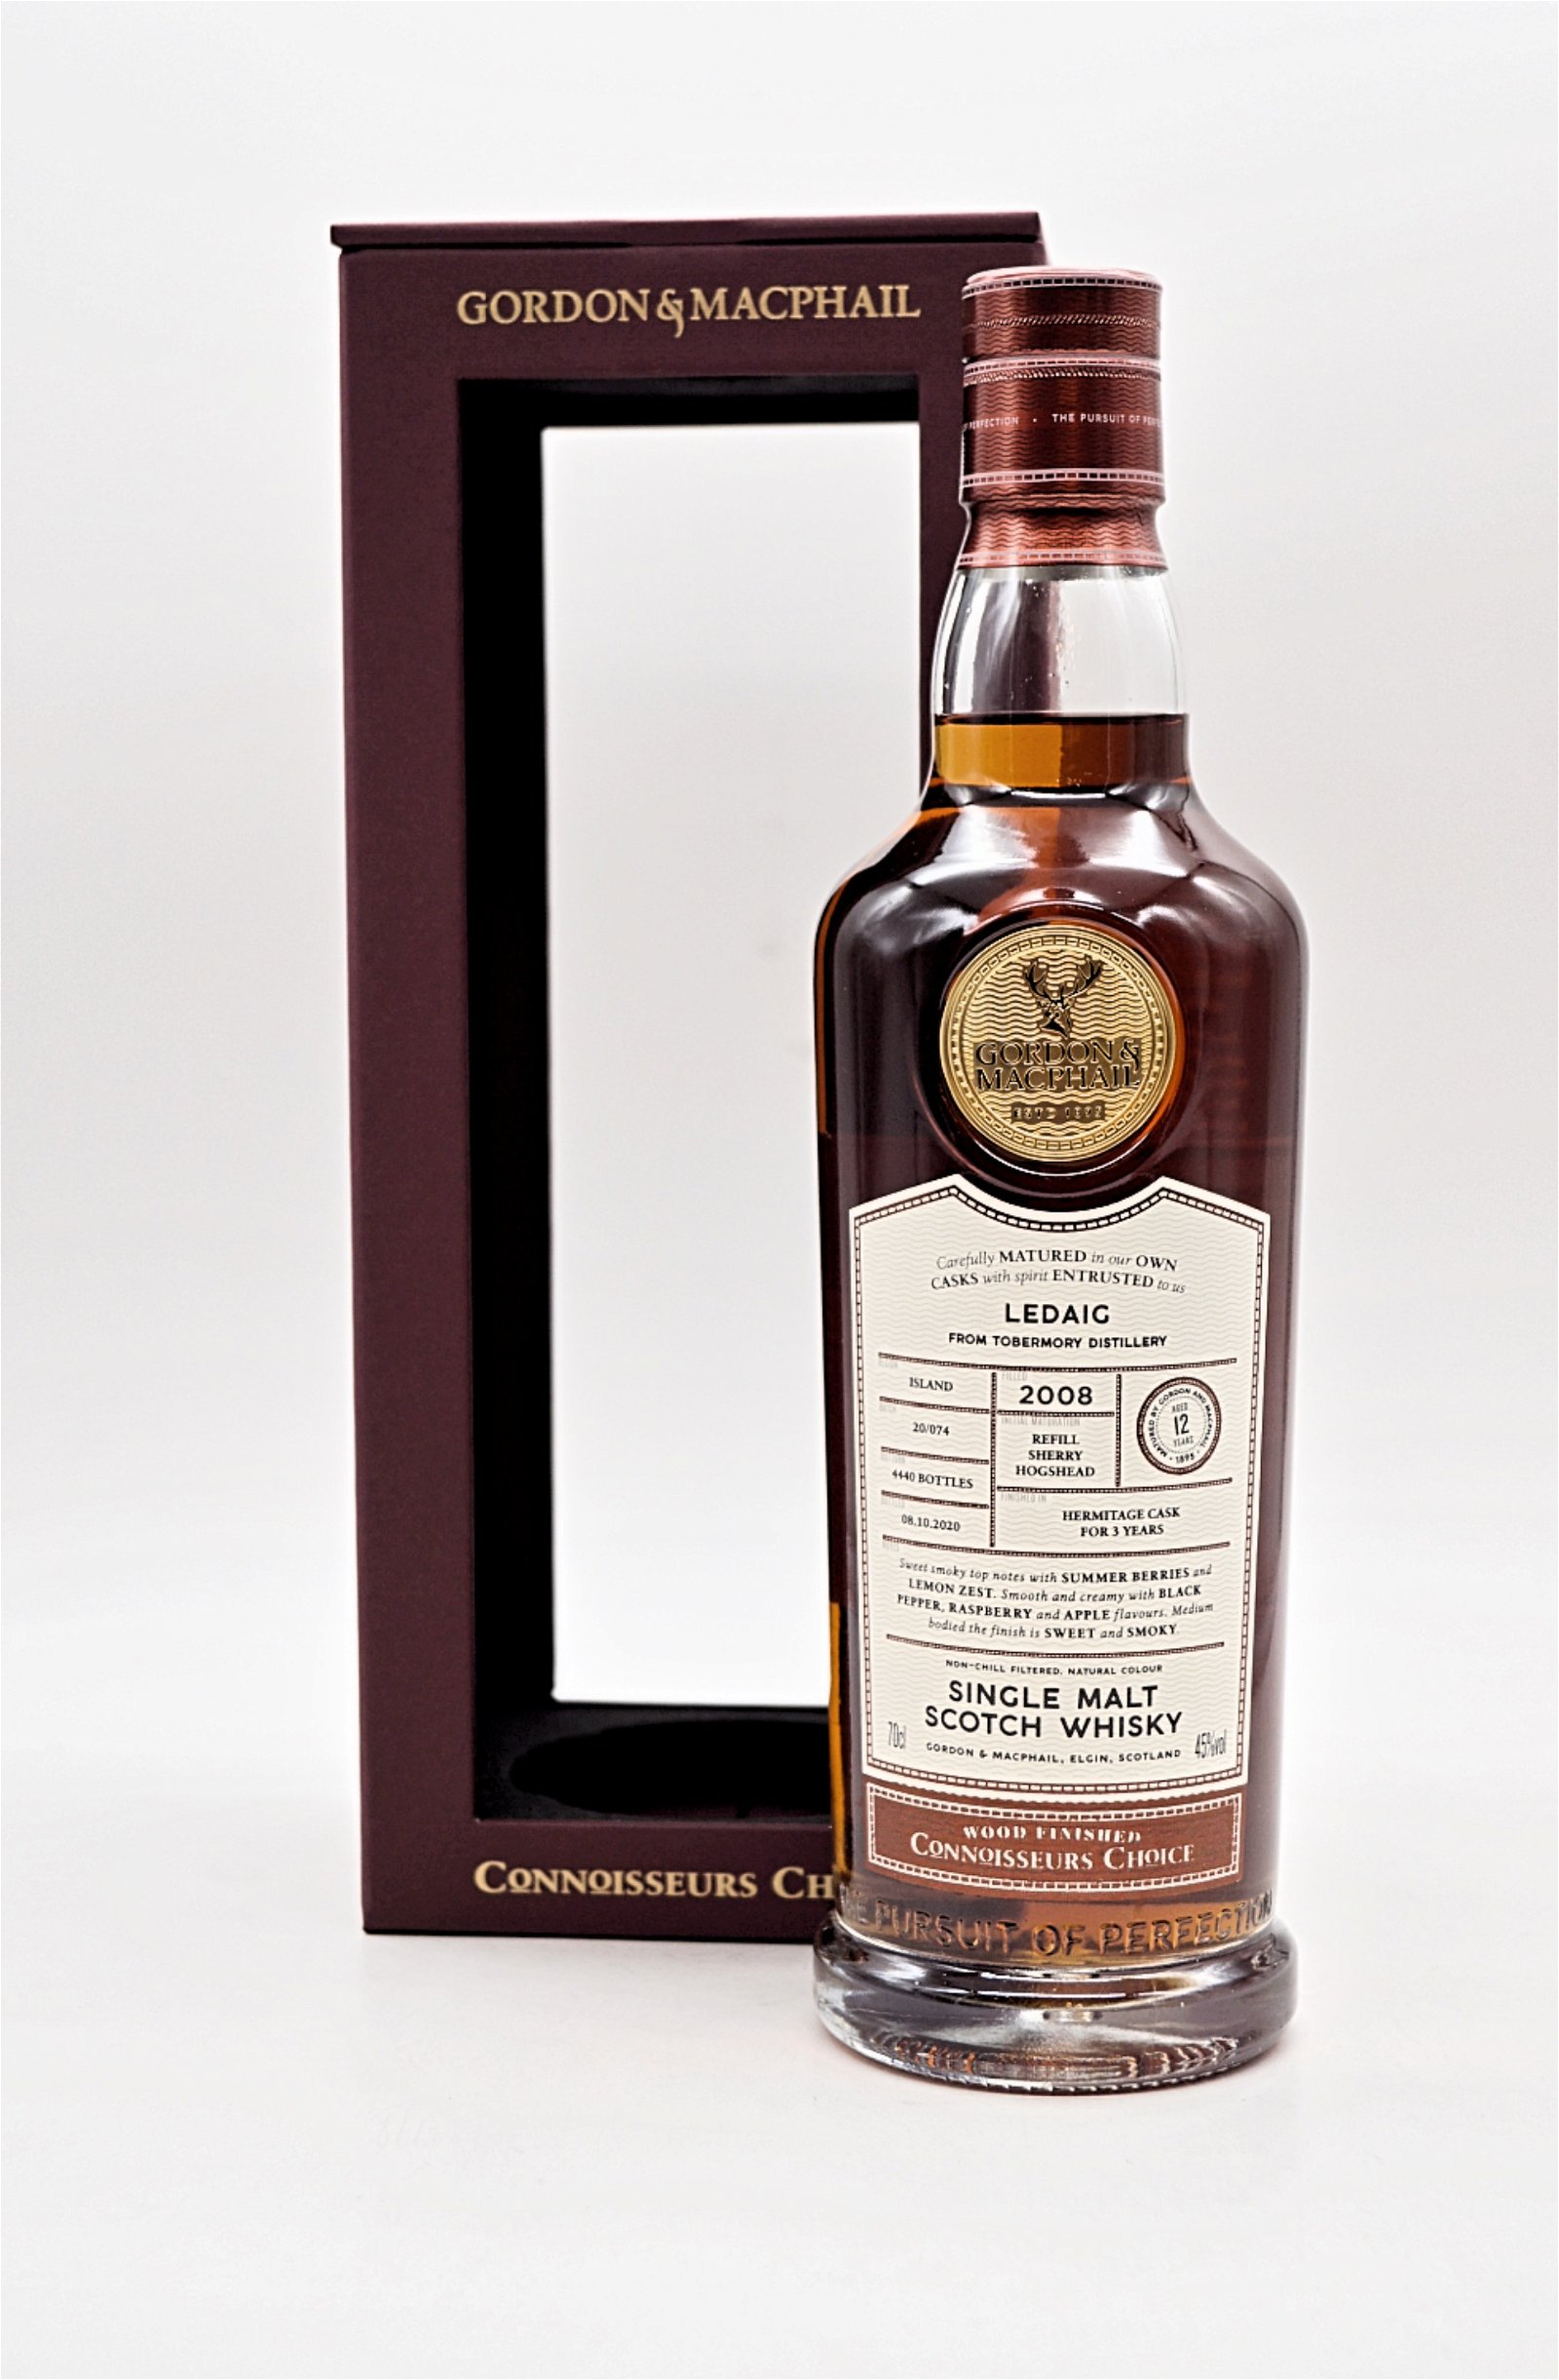 Gordon & Macphail Connoisseurs Choice Ledaig Tobermory Distillery 2008/2020 Single Malt Scotch Whisky